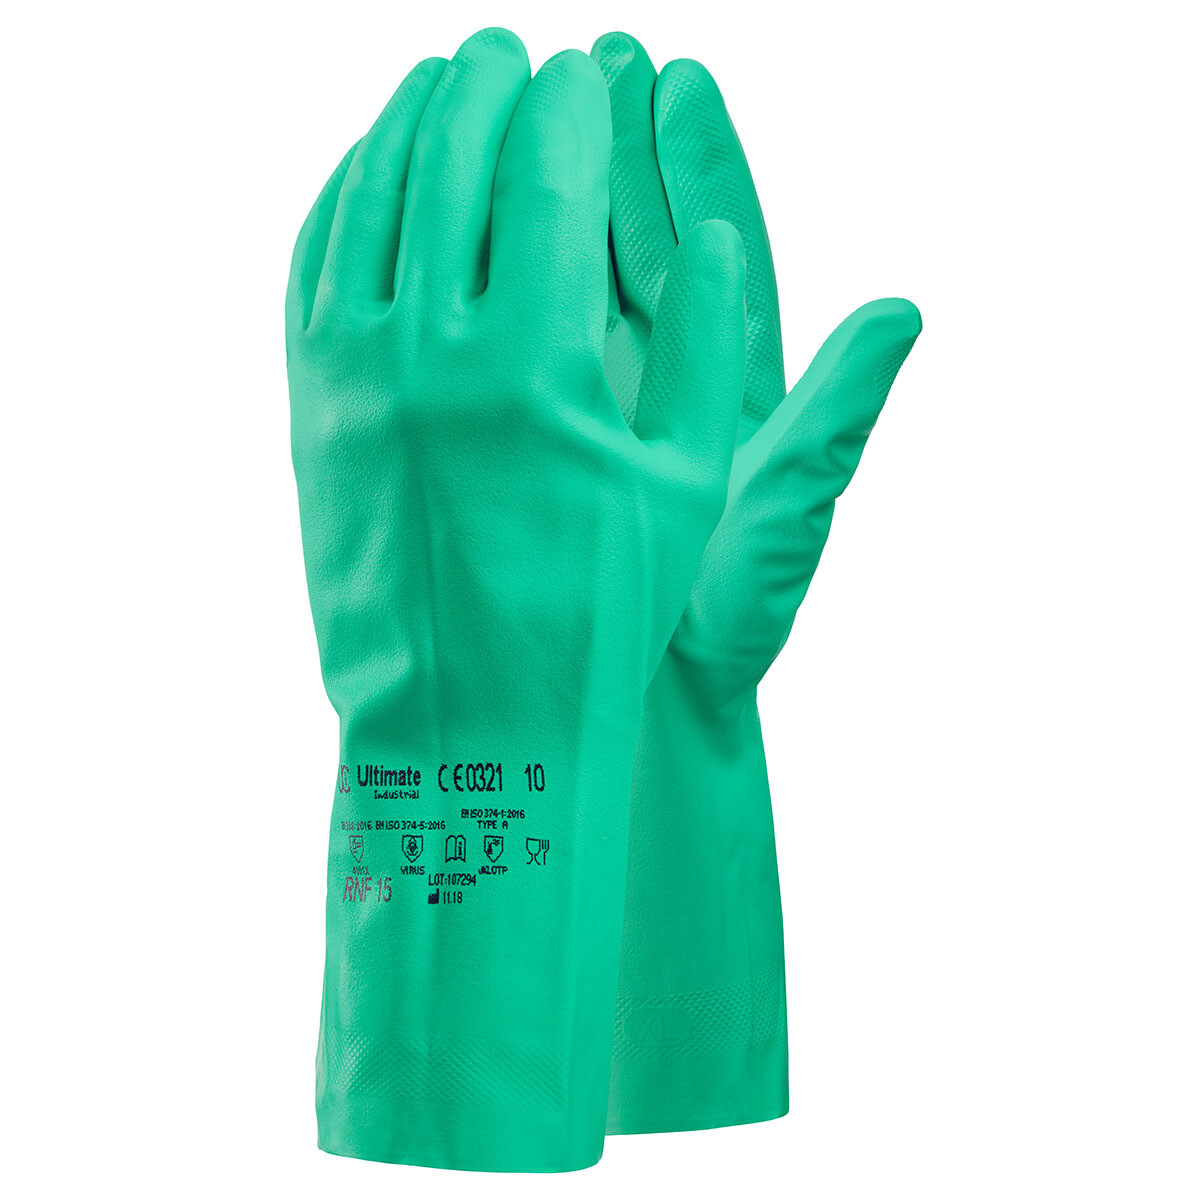 13" Long Green Nitrite Gloves Medium